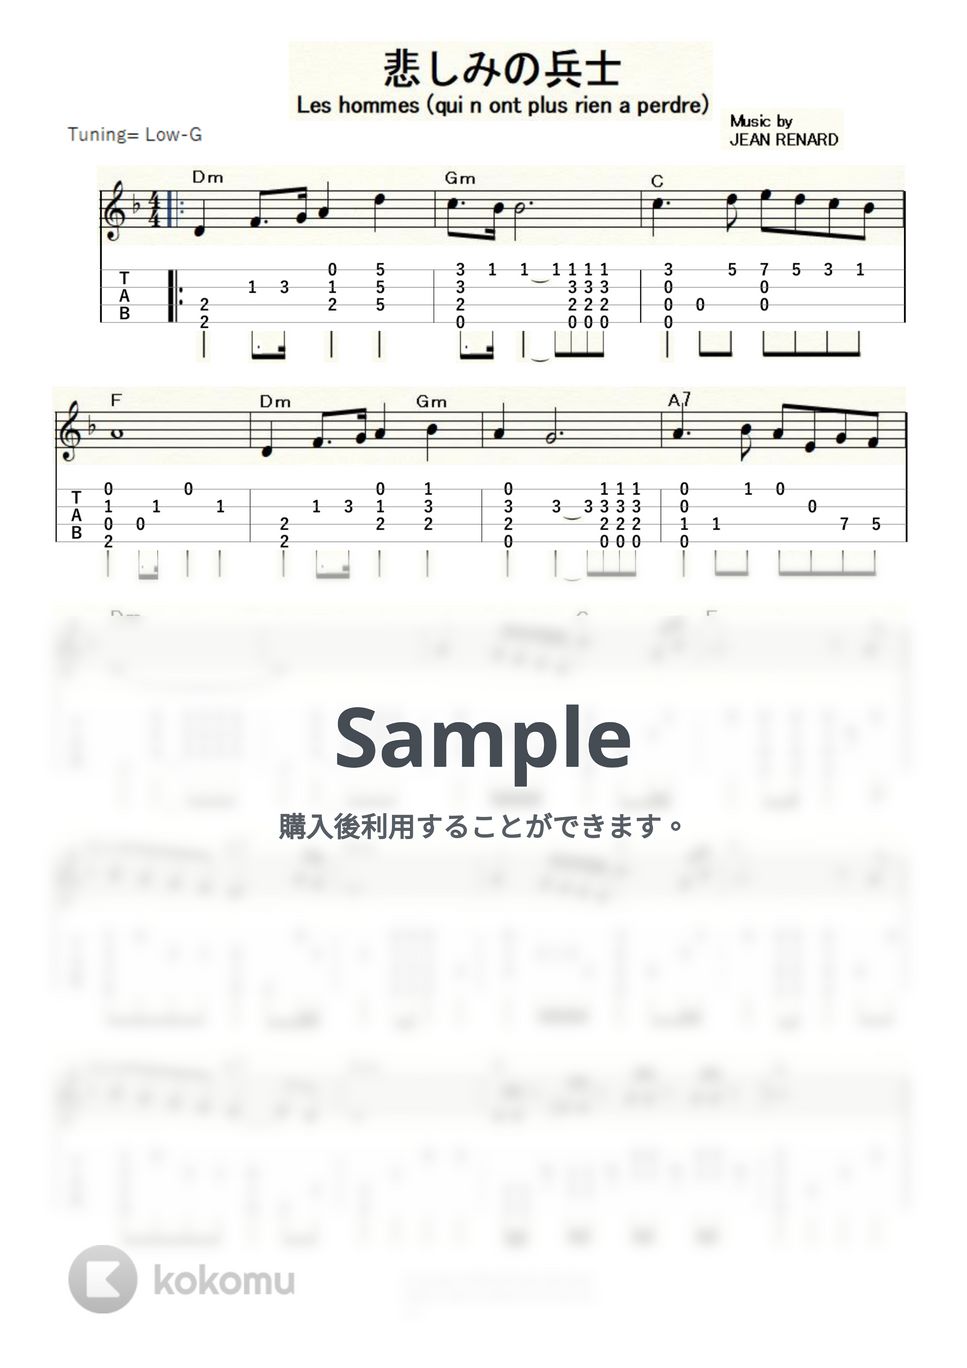 シルヴィ・バルタン - 悲しみの兵士 (ｳｸﾚﾚｿﾛ/Low-G/中級) by ukulelepapa